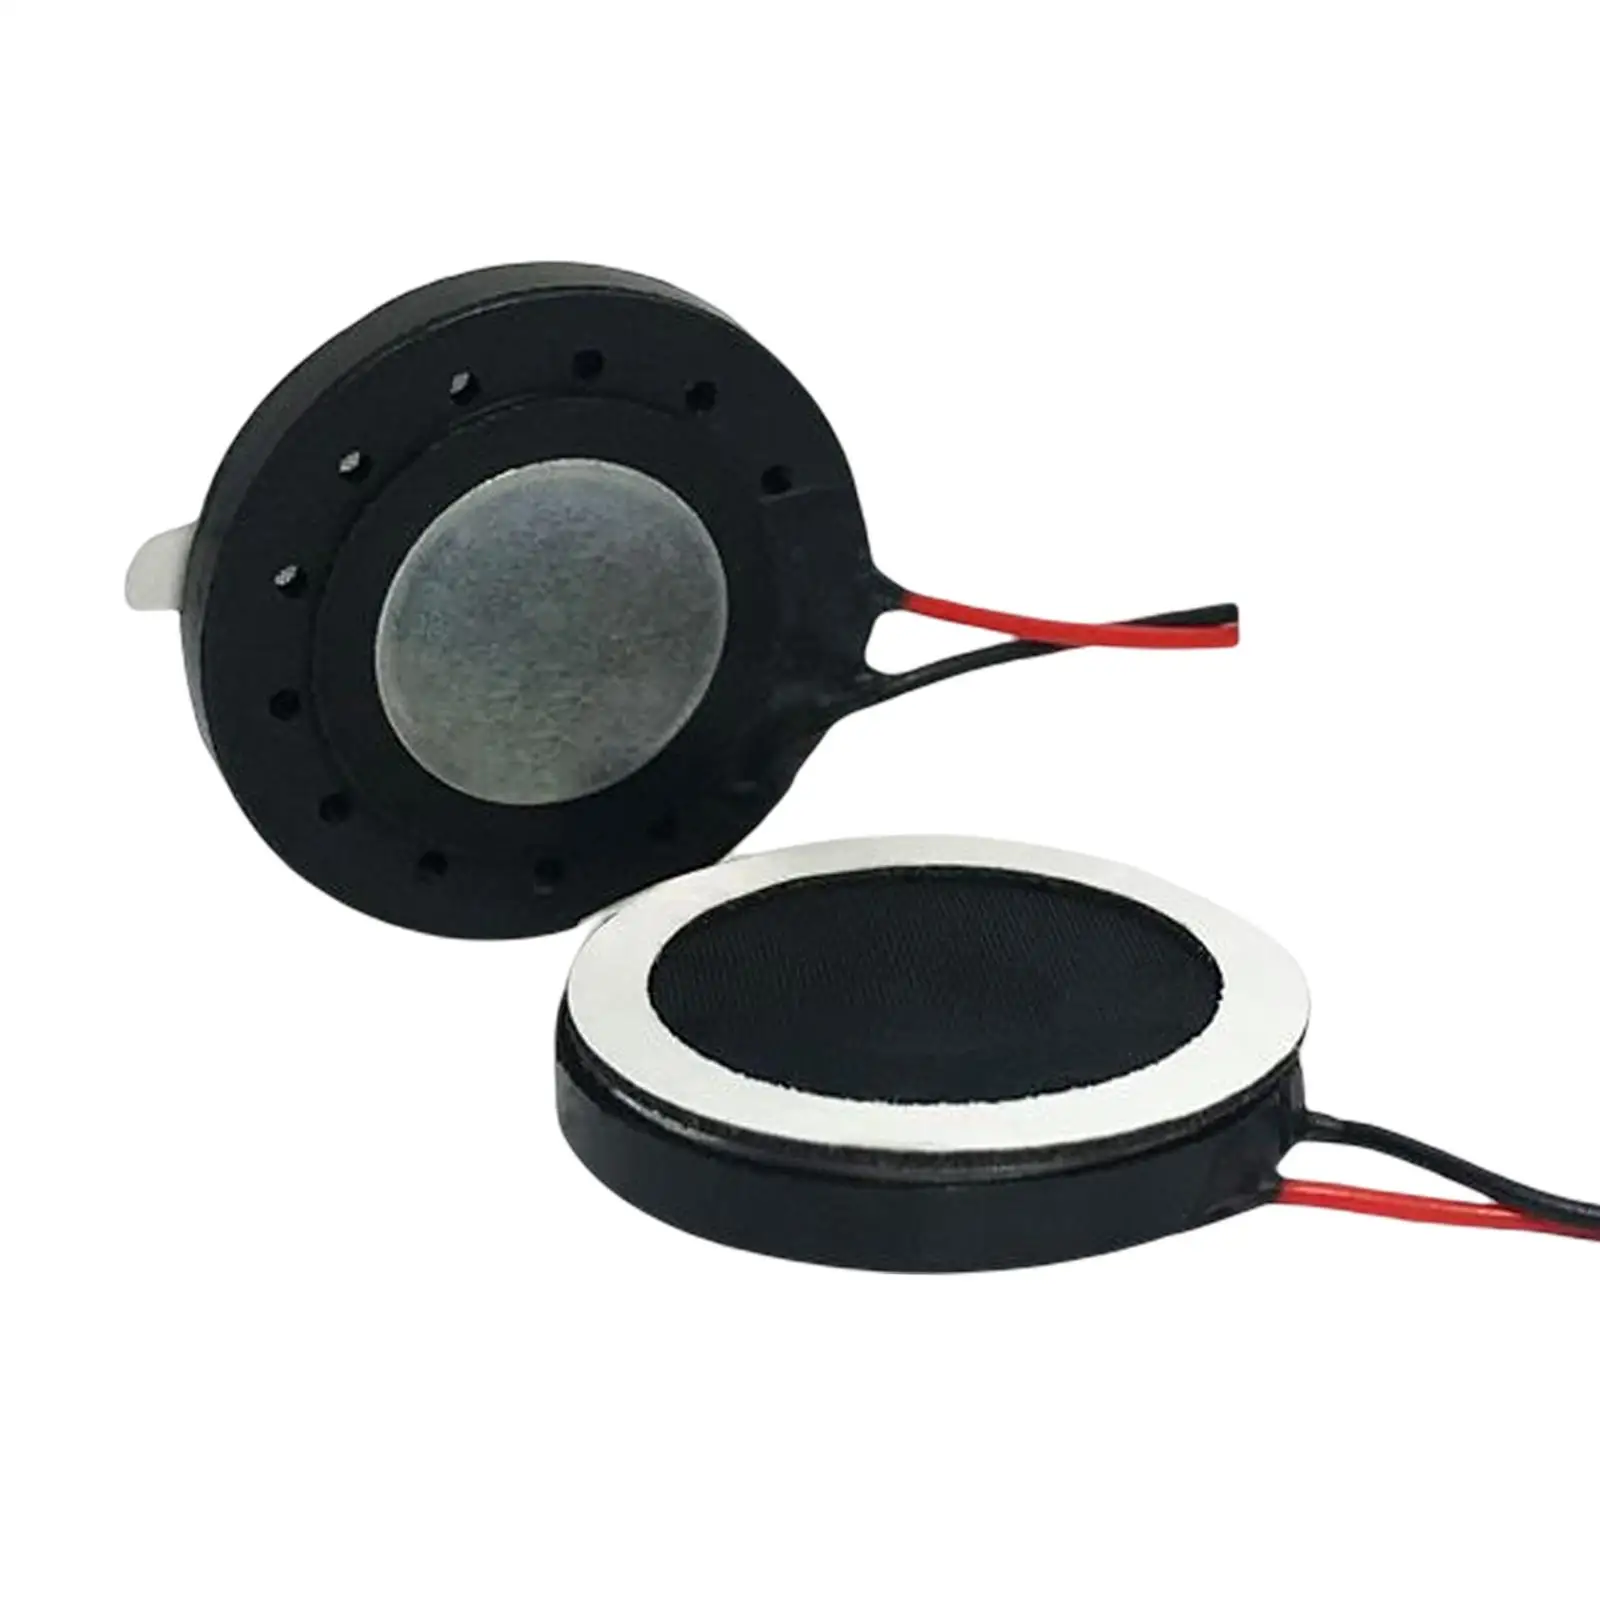 2Pcs 1W 8 Ohm Internal Magnet Speaker Mini Horn Small Speaker for Fingerprint Lock Speaker Audio Parts Round Metal Shell Slim